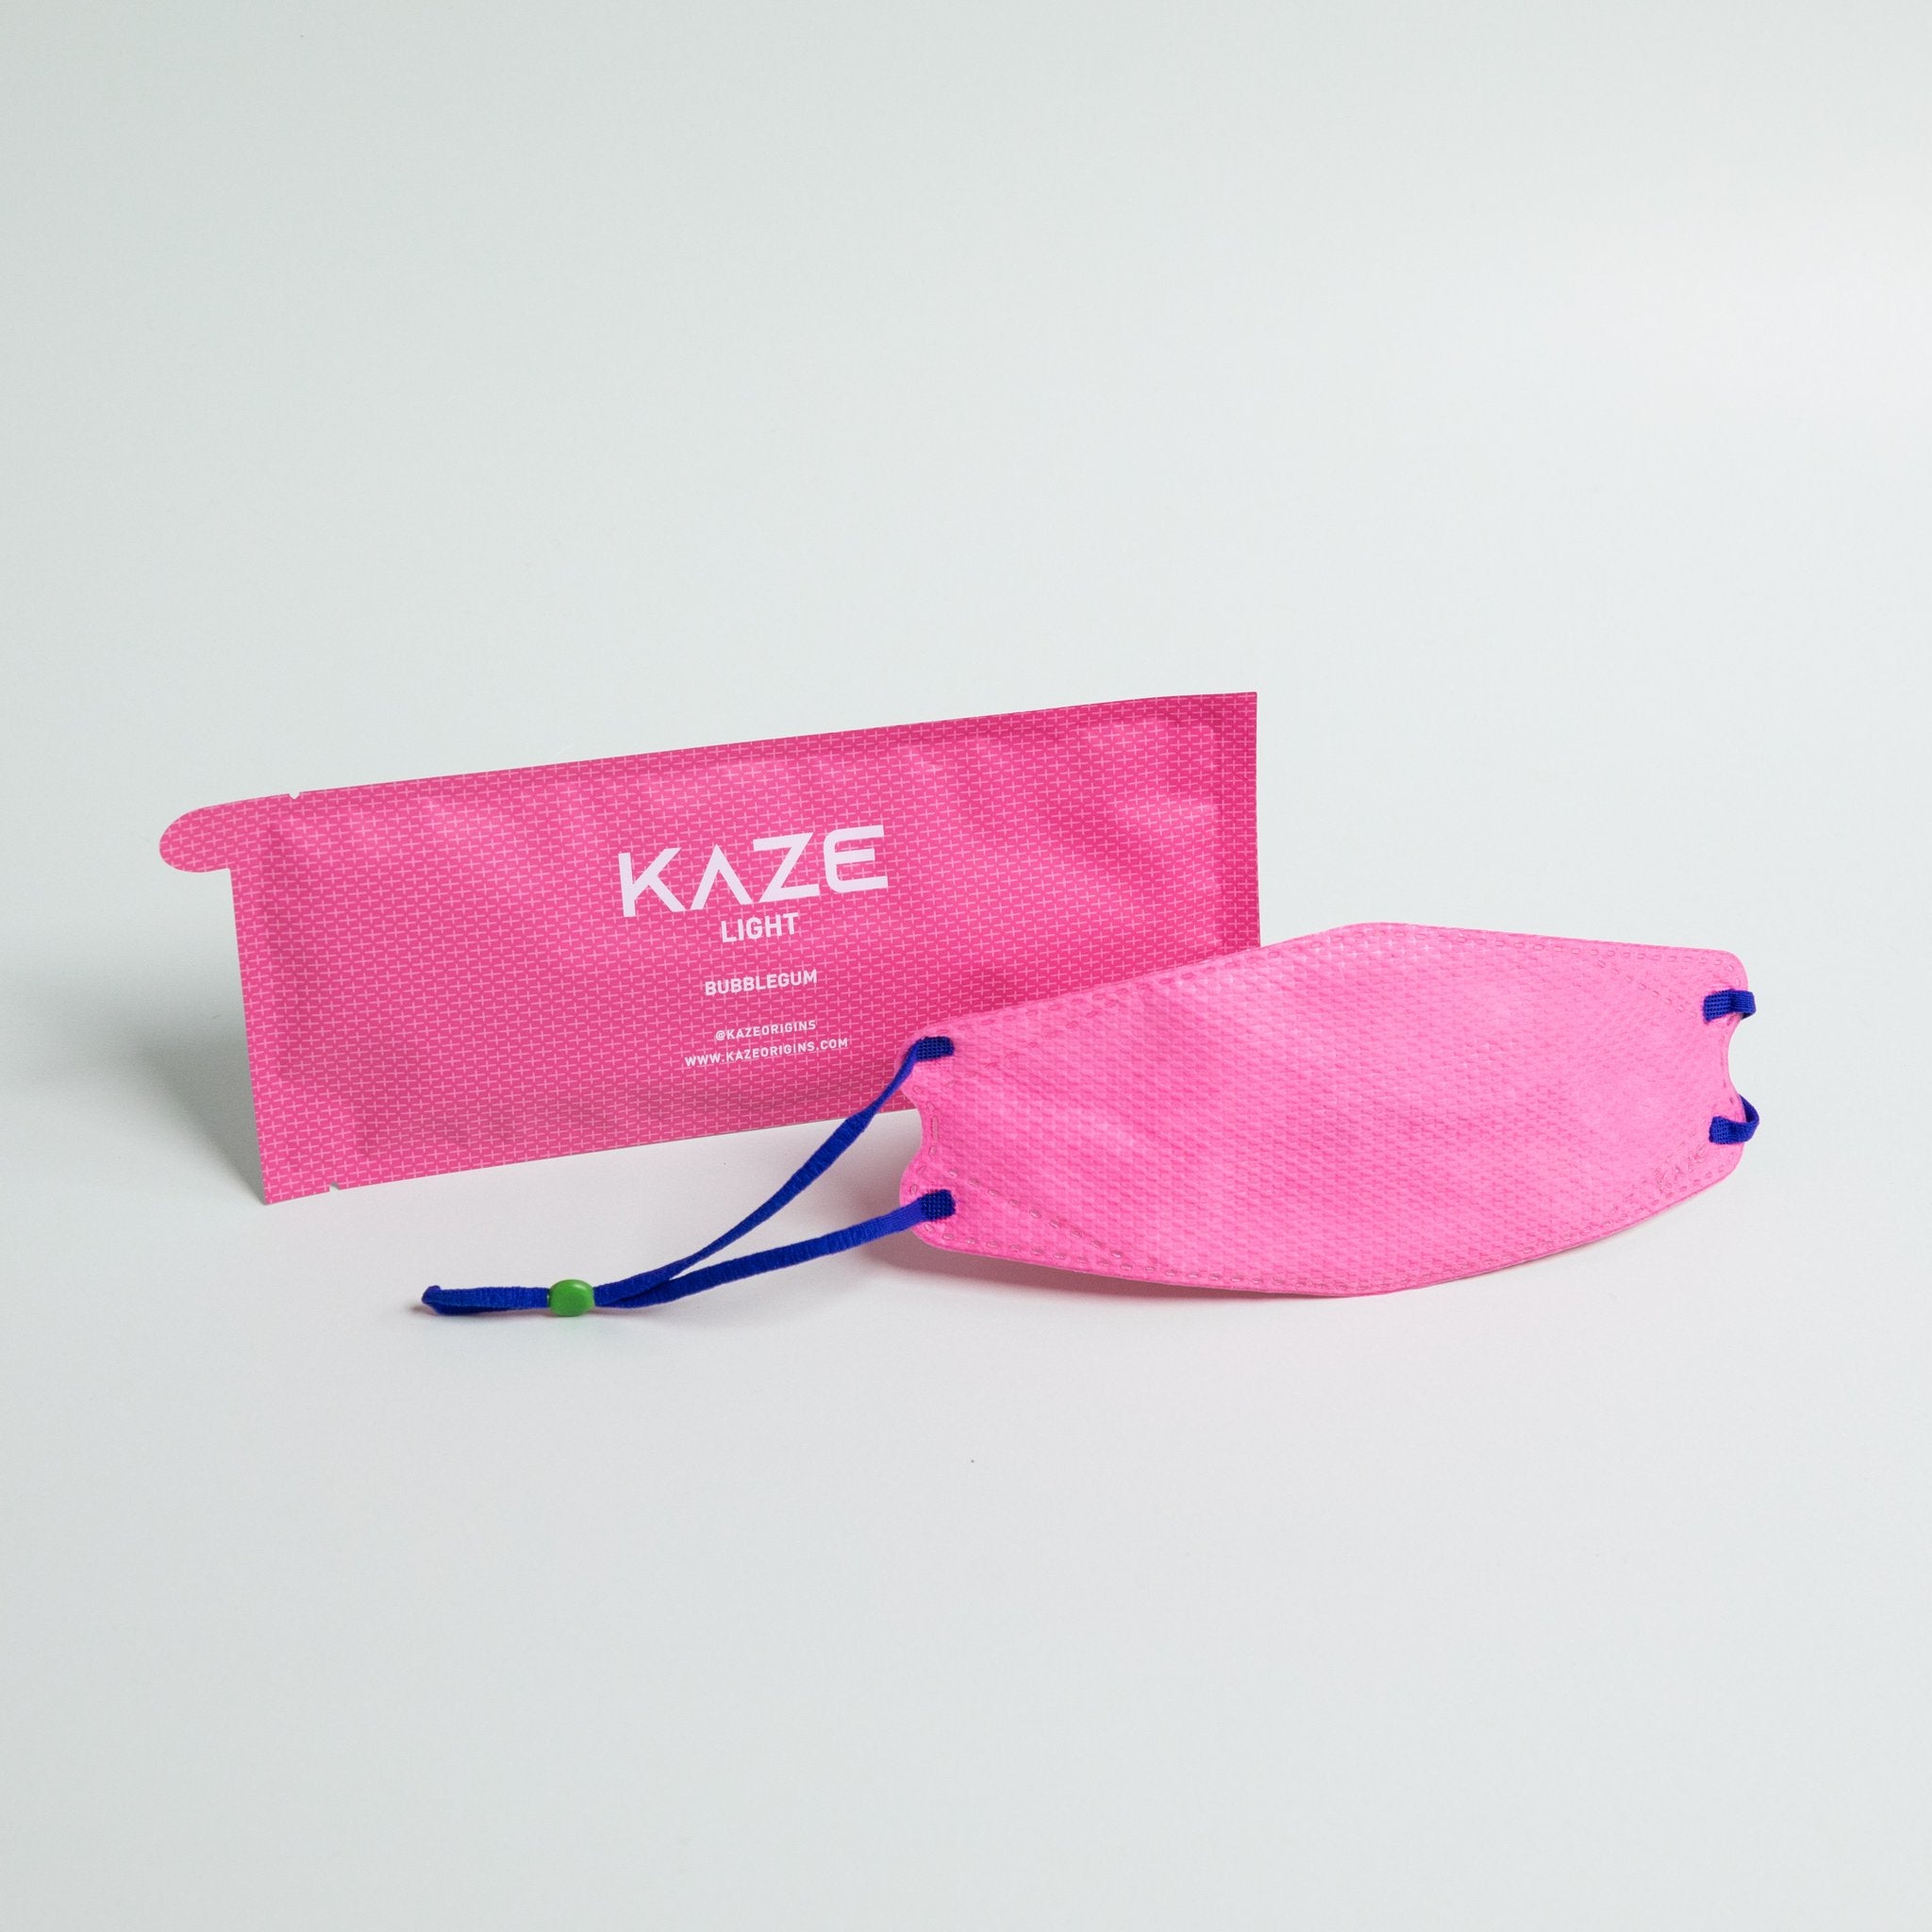 KAZE Masks - Light Eye Candy Series